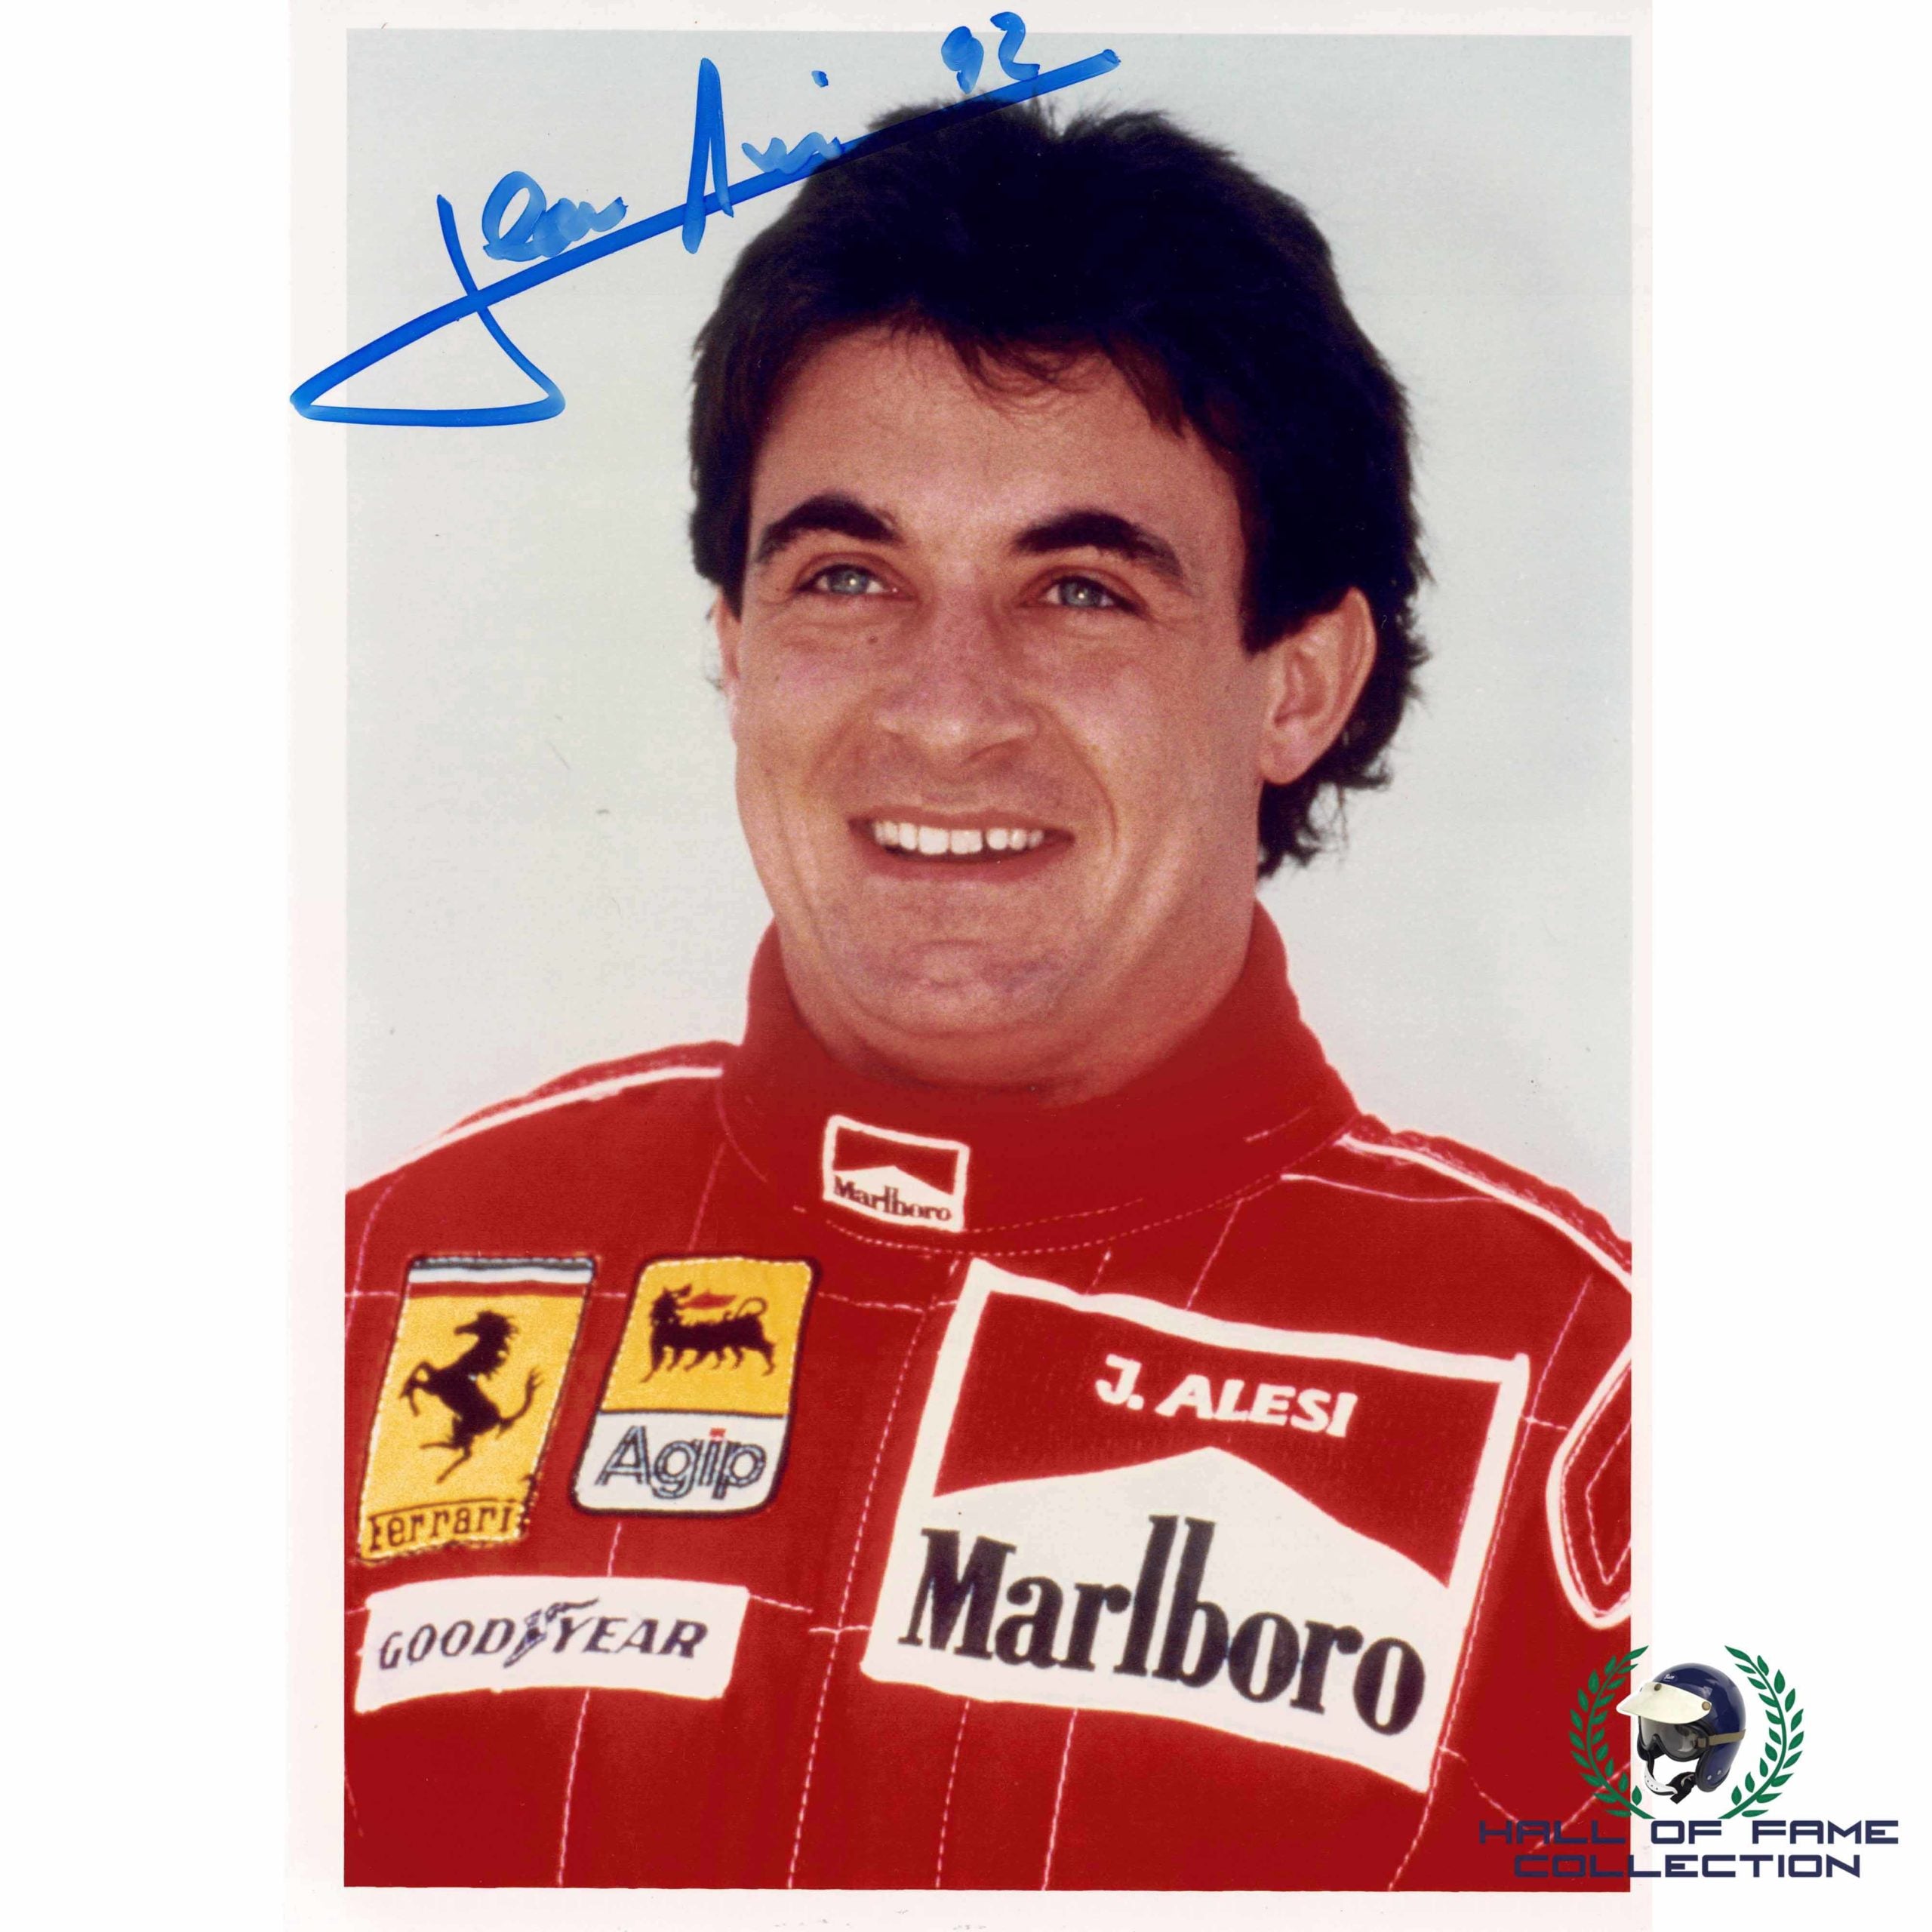 1992 Jean Alesi Signed Scuderia Ferrari 8 x 6 F1 Photograph